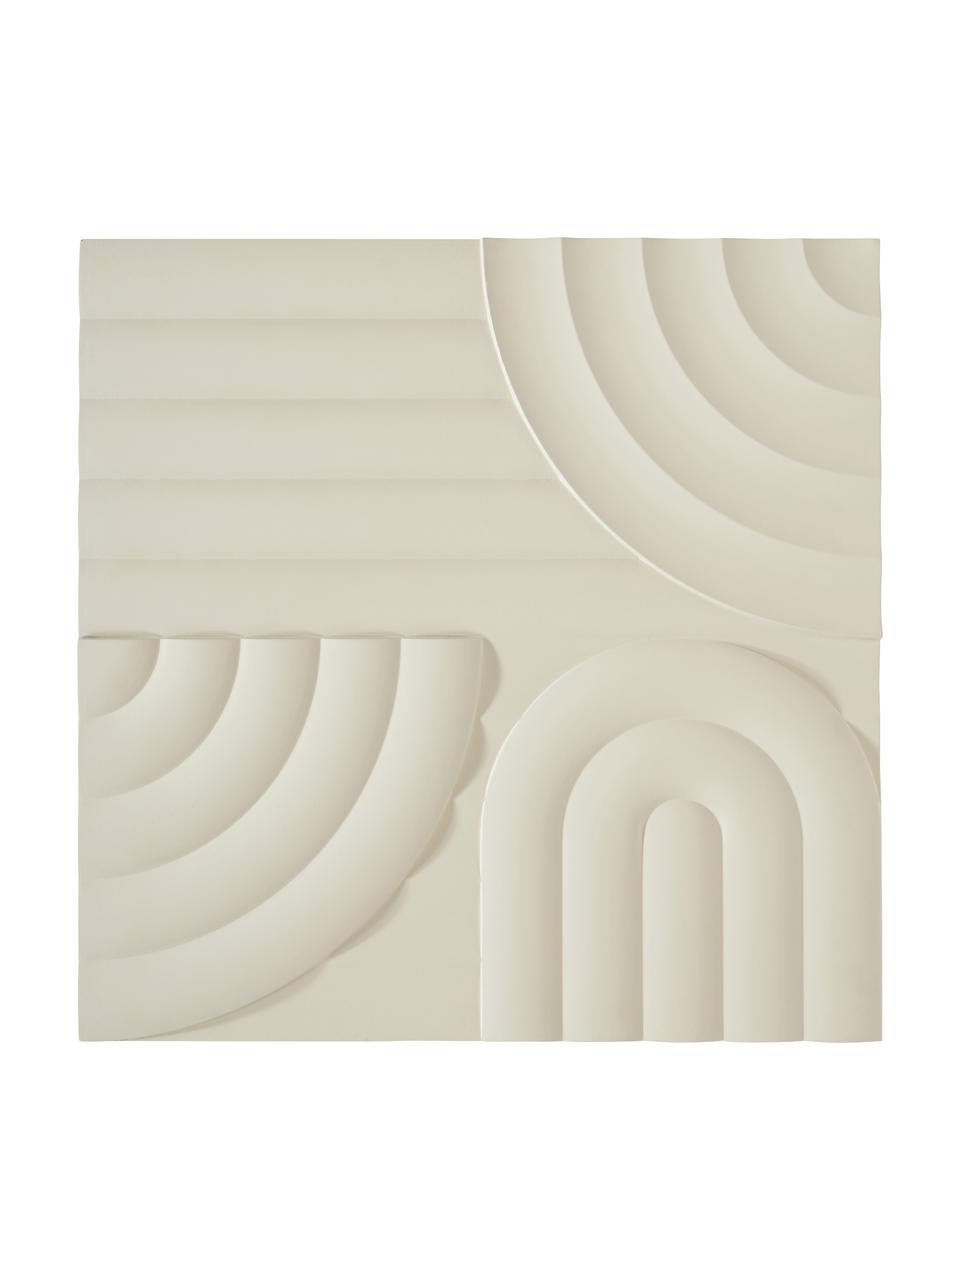 Wandobjekt Massimo aus Holz, Mitteldichte Holzfaserplatte (MDF), Beige, B 80 x H 80 cm